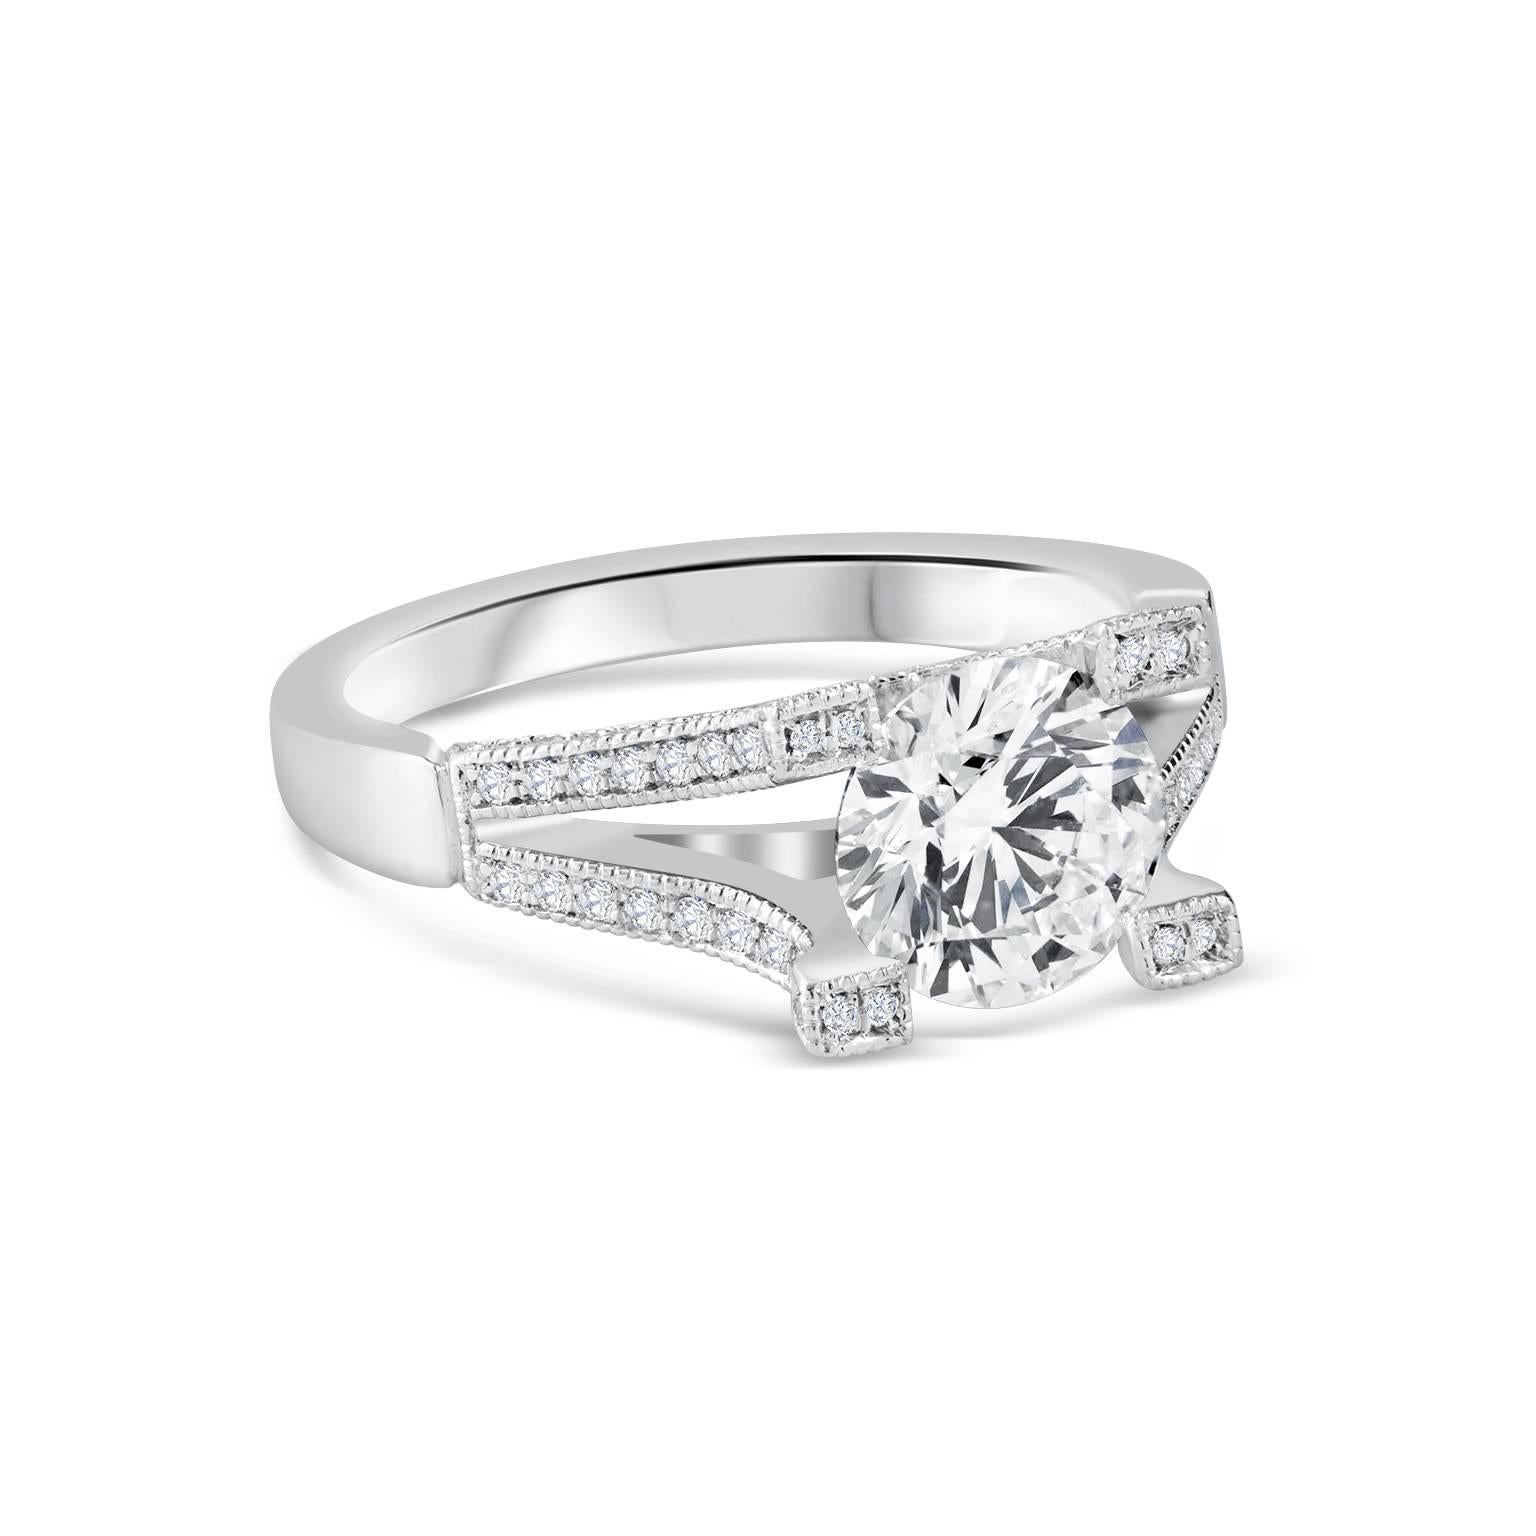 dieser Ring ist Teil der originellen Kollektion diamantener Verlobungsringe von Roman Malakov. Ein 1,62 Karat schwerer, GIA-zertifizierter (F-VVS2) Diamant schwebt elegant in der Fassung und tanzt im Scheinwerferlicht. Der Diamant ist sicher in